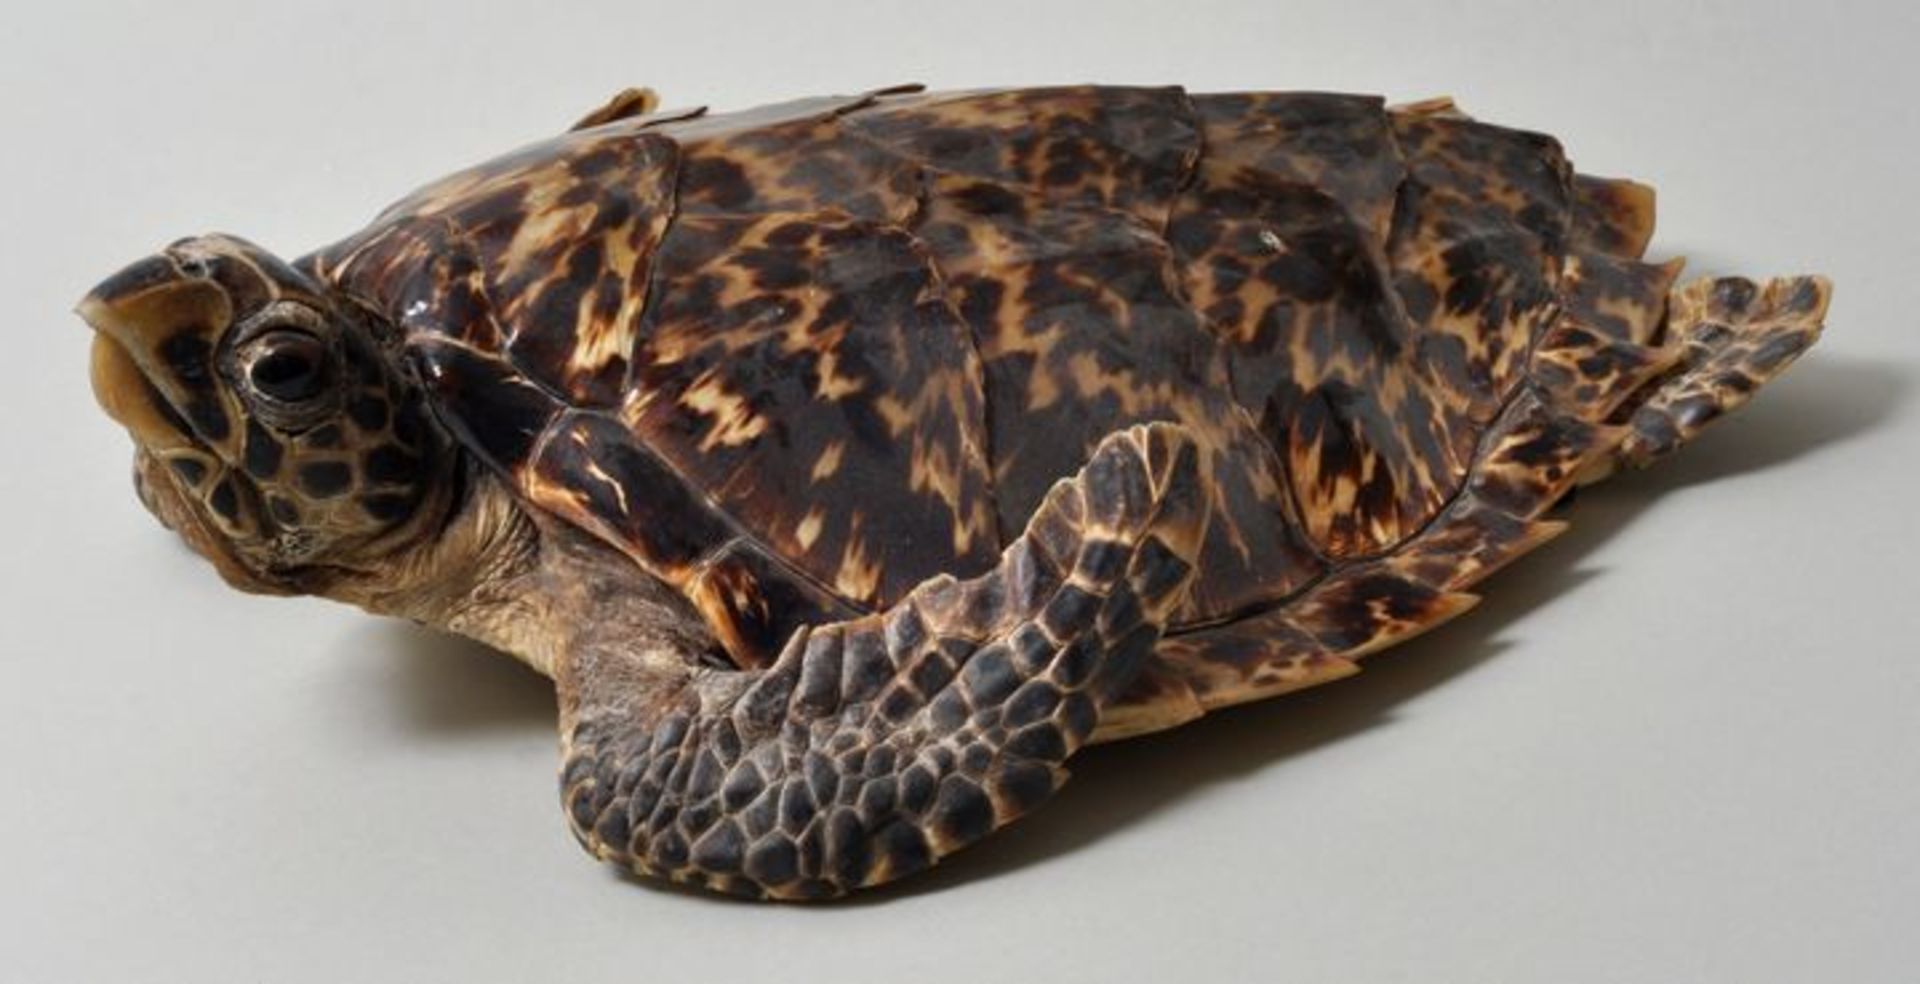 Tierpräparat einer Echten KarettschildkröteVollständiges Tier mit Panzer, besonders schöne, dunkle